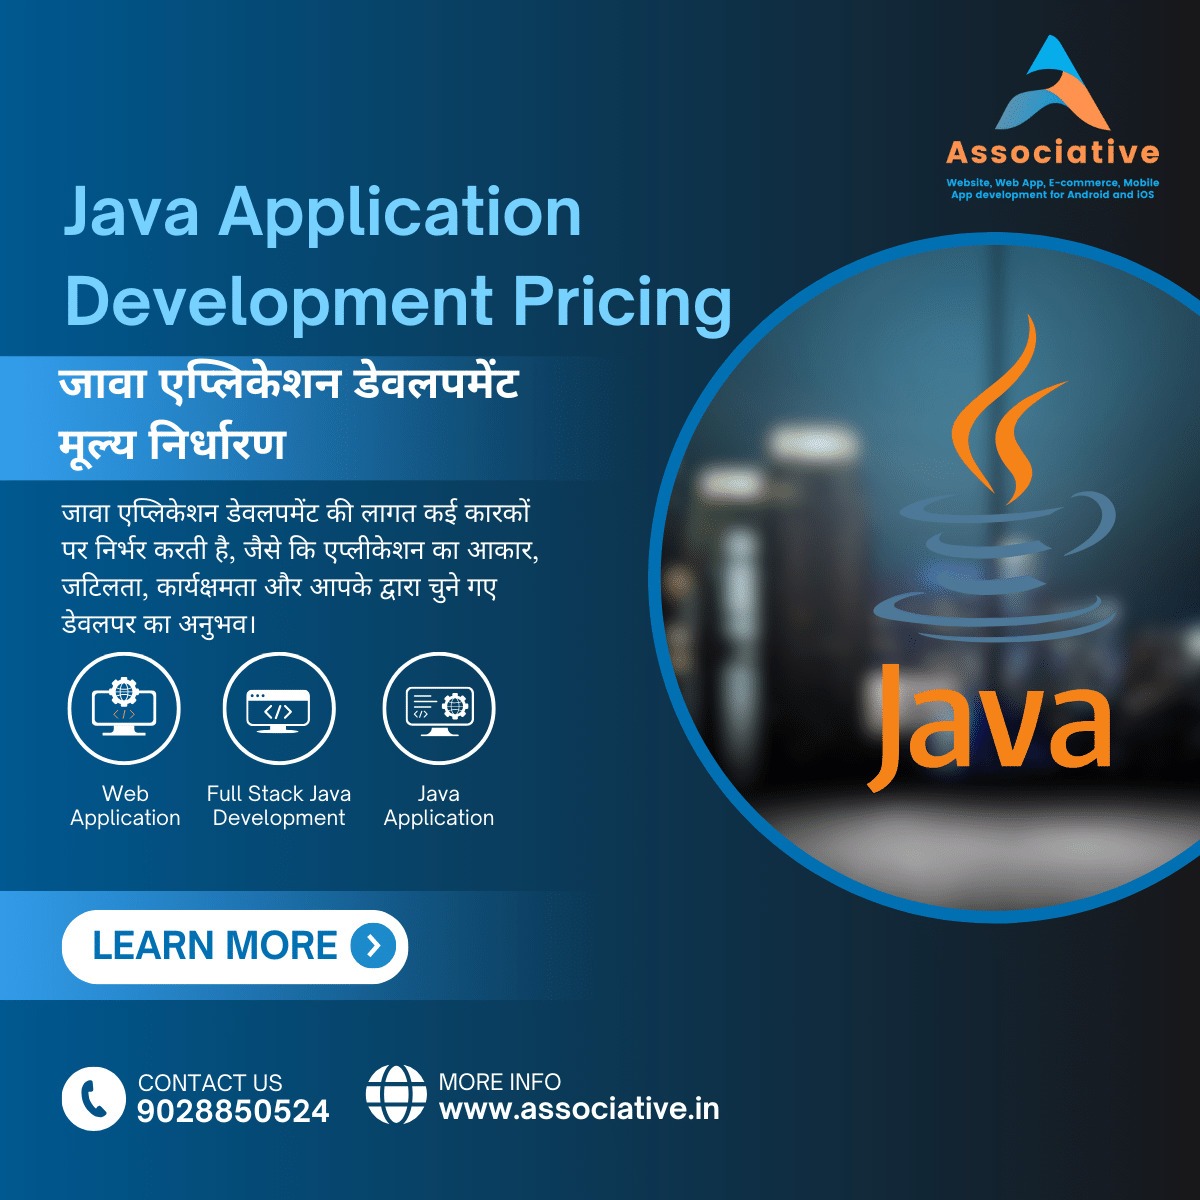 Java Application Development Pricing जावा एप्लिकेशन डेवलपमेंट मूल्य निर्धारण